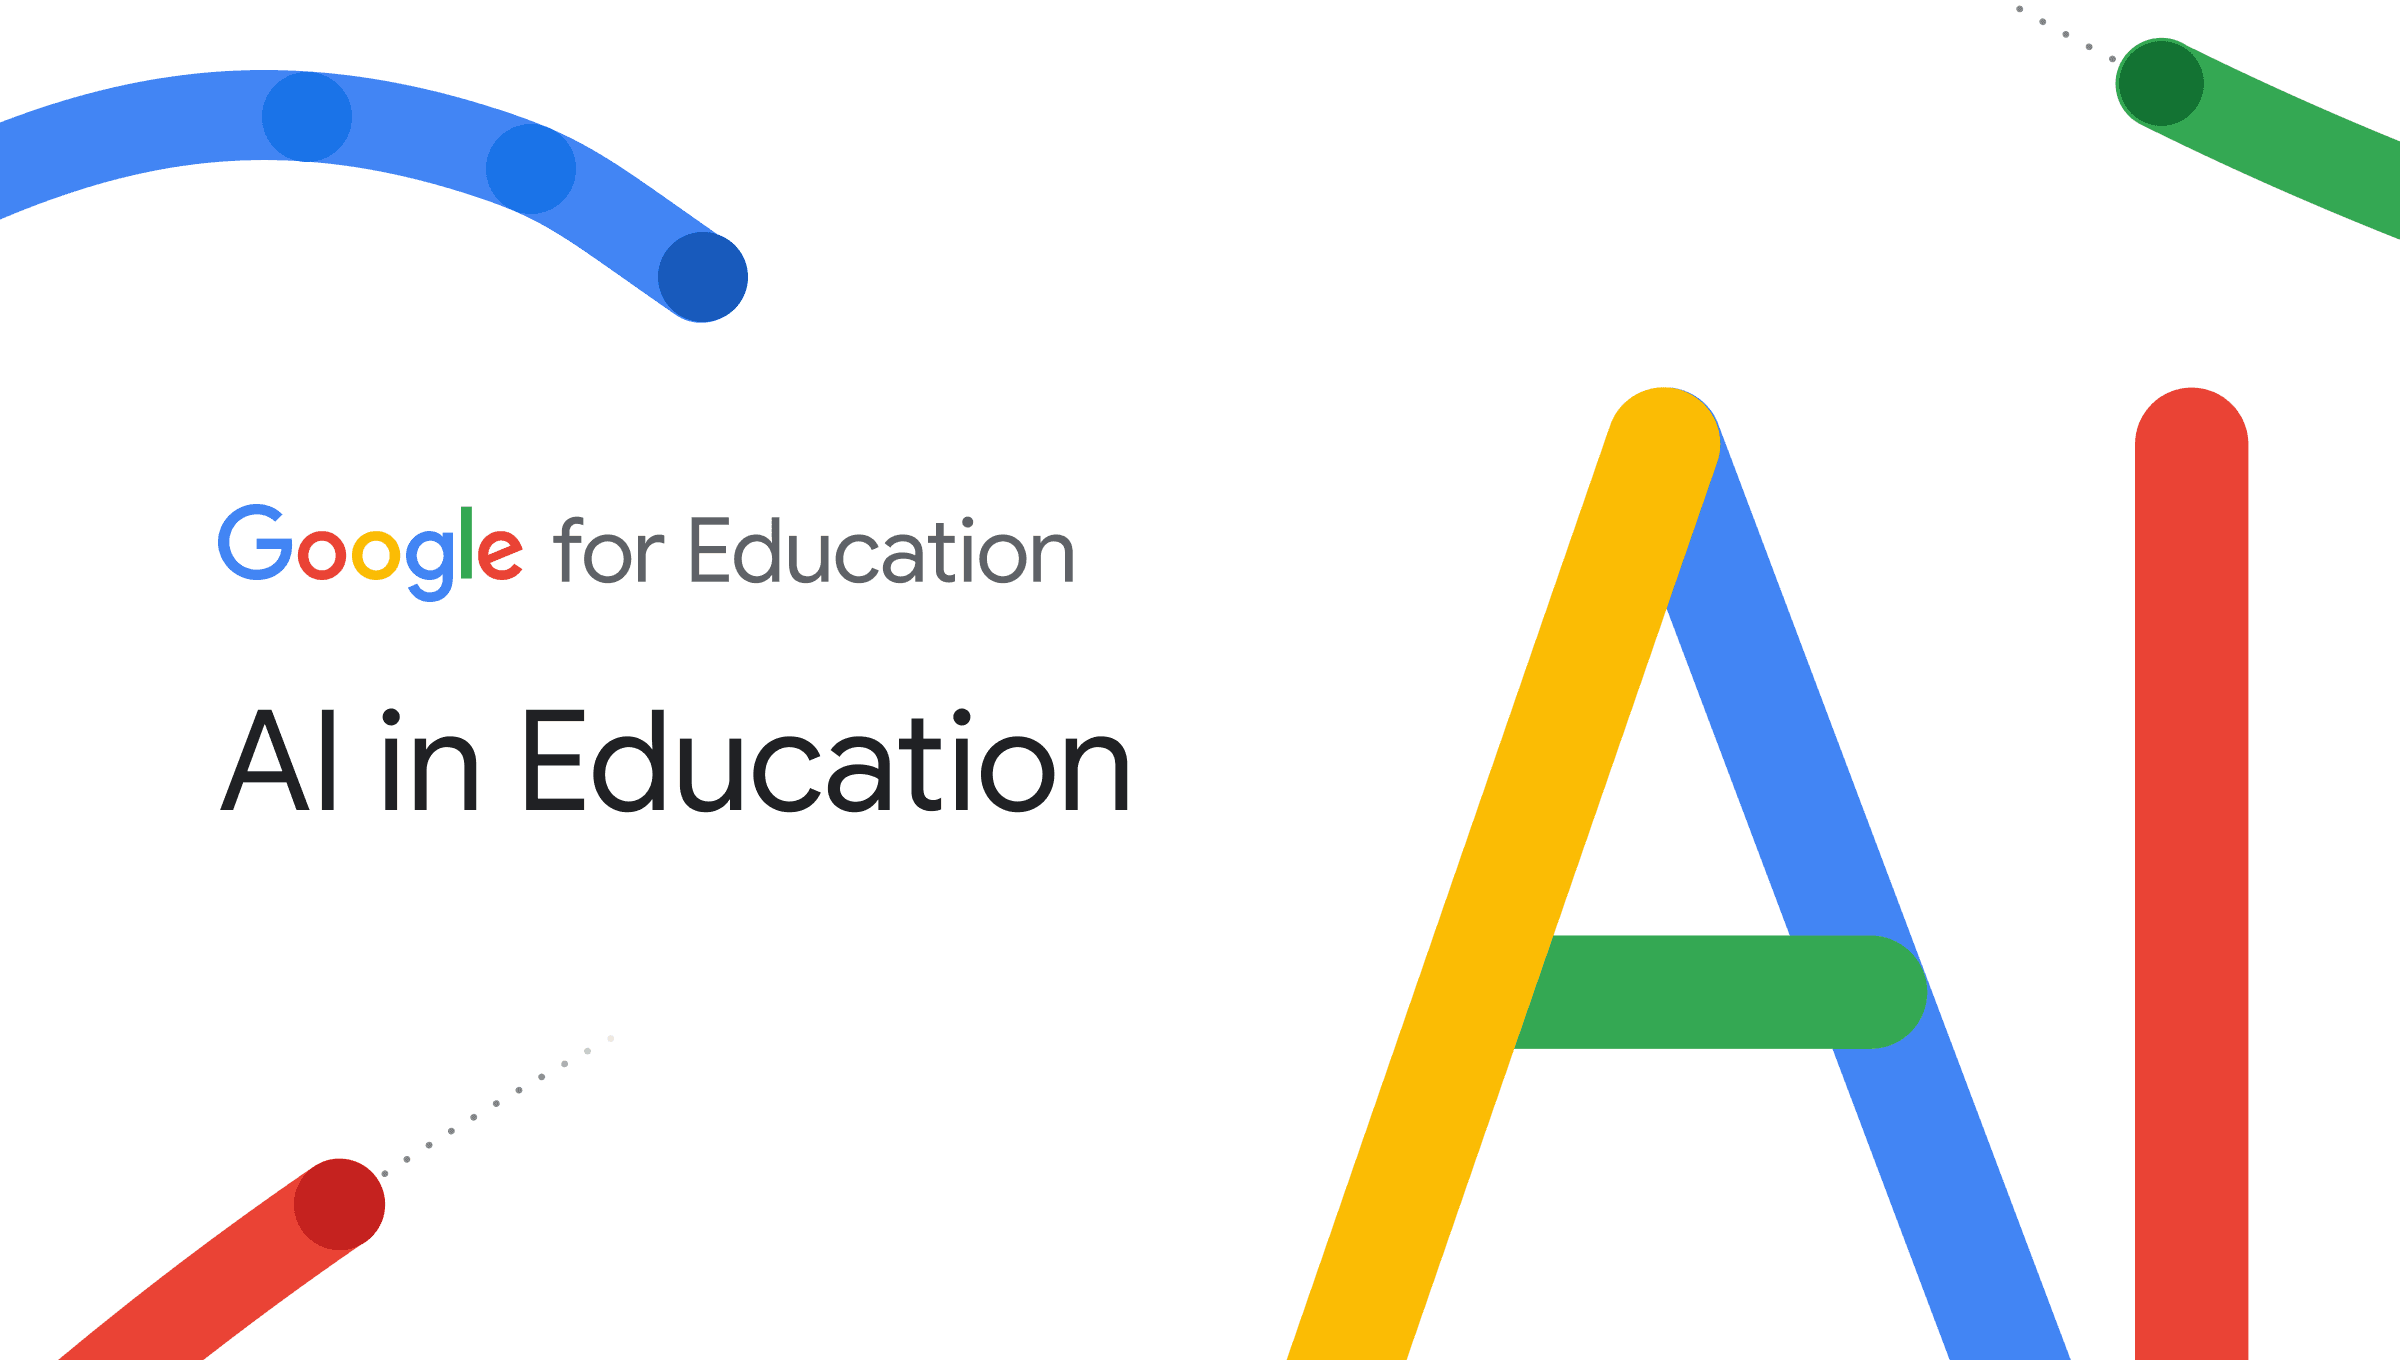 AI Education